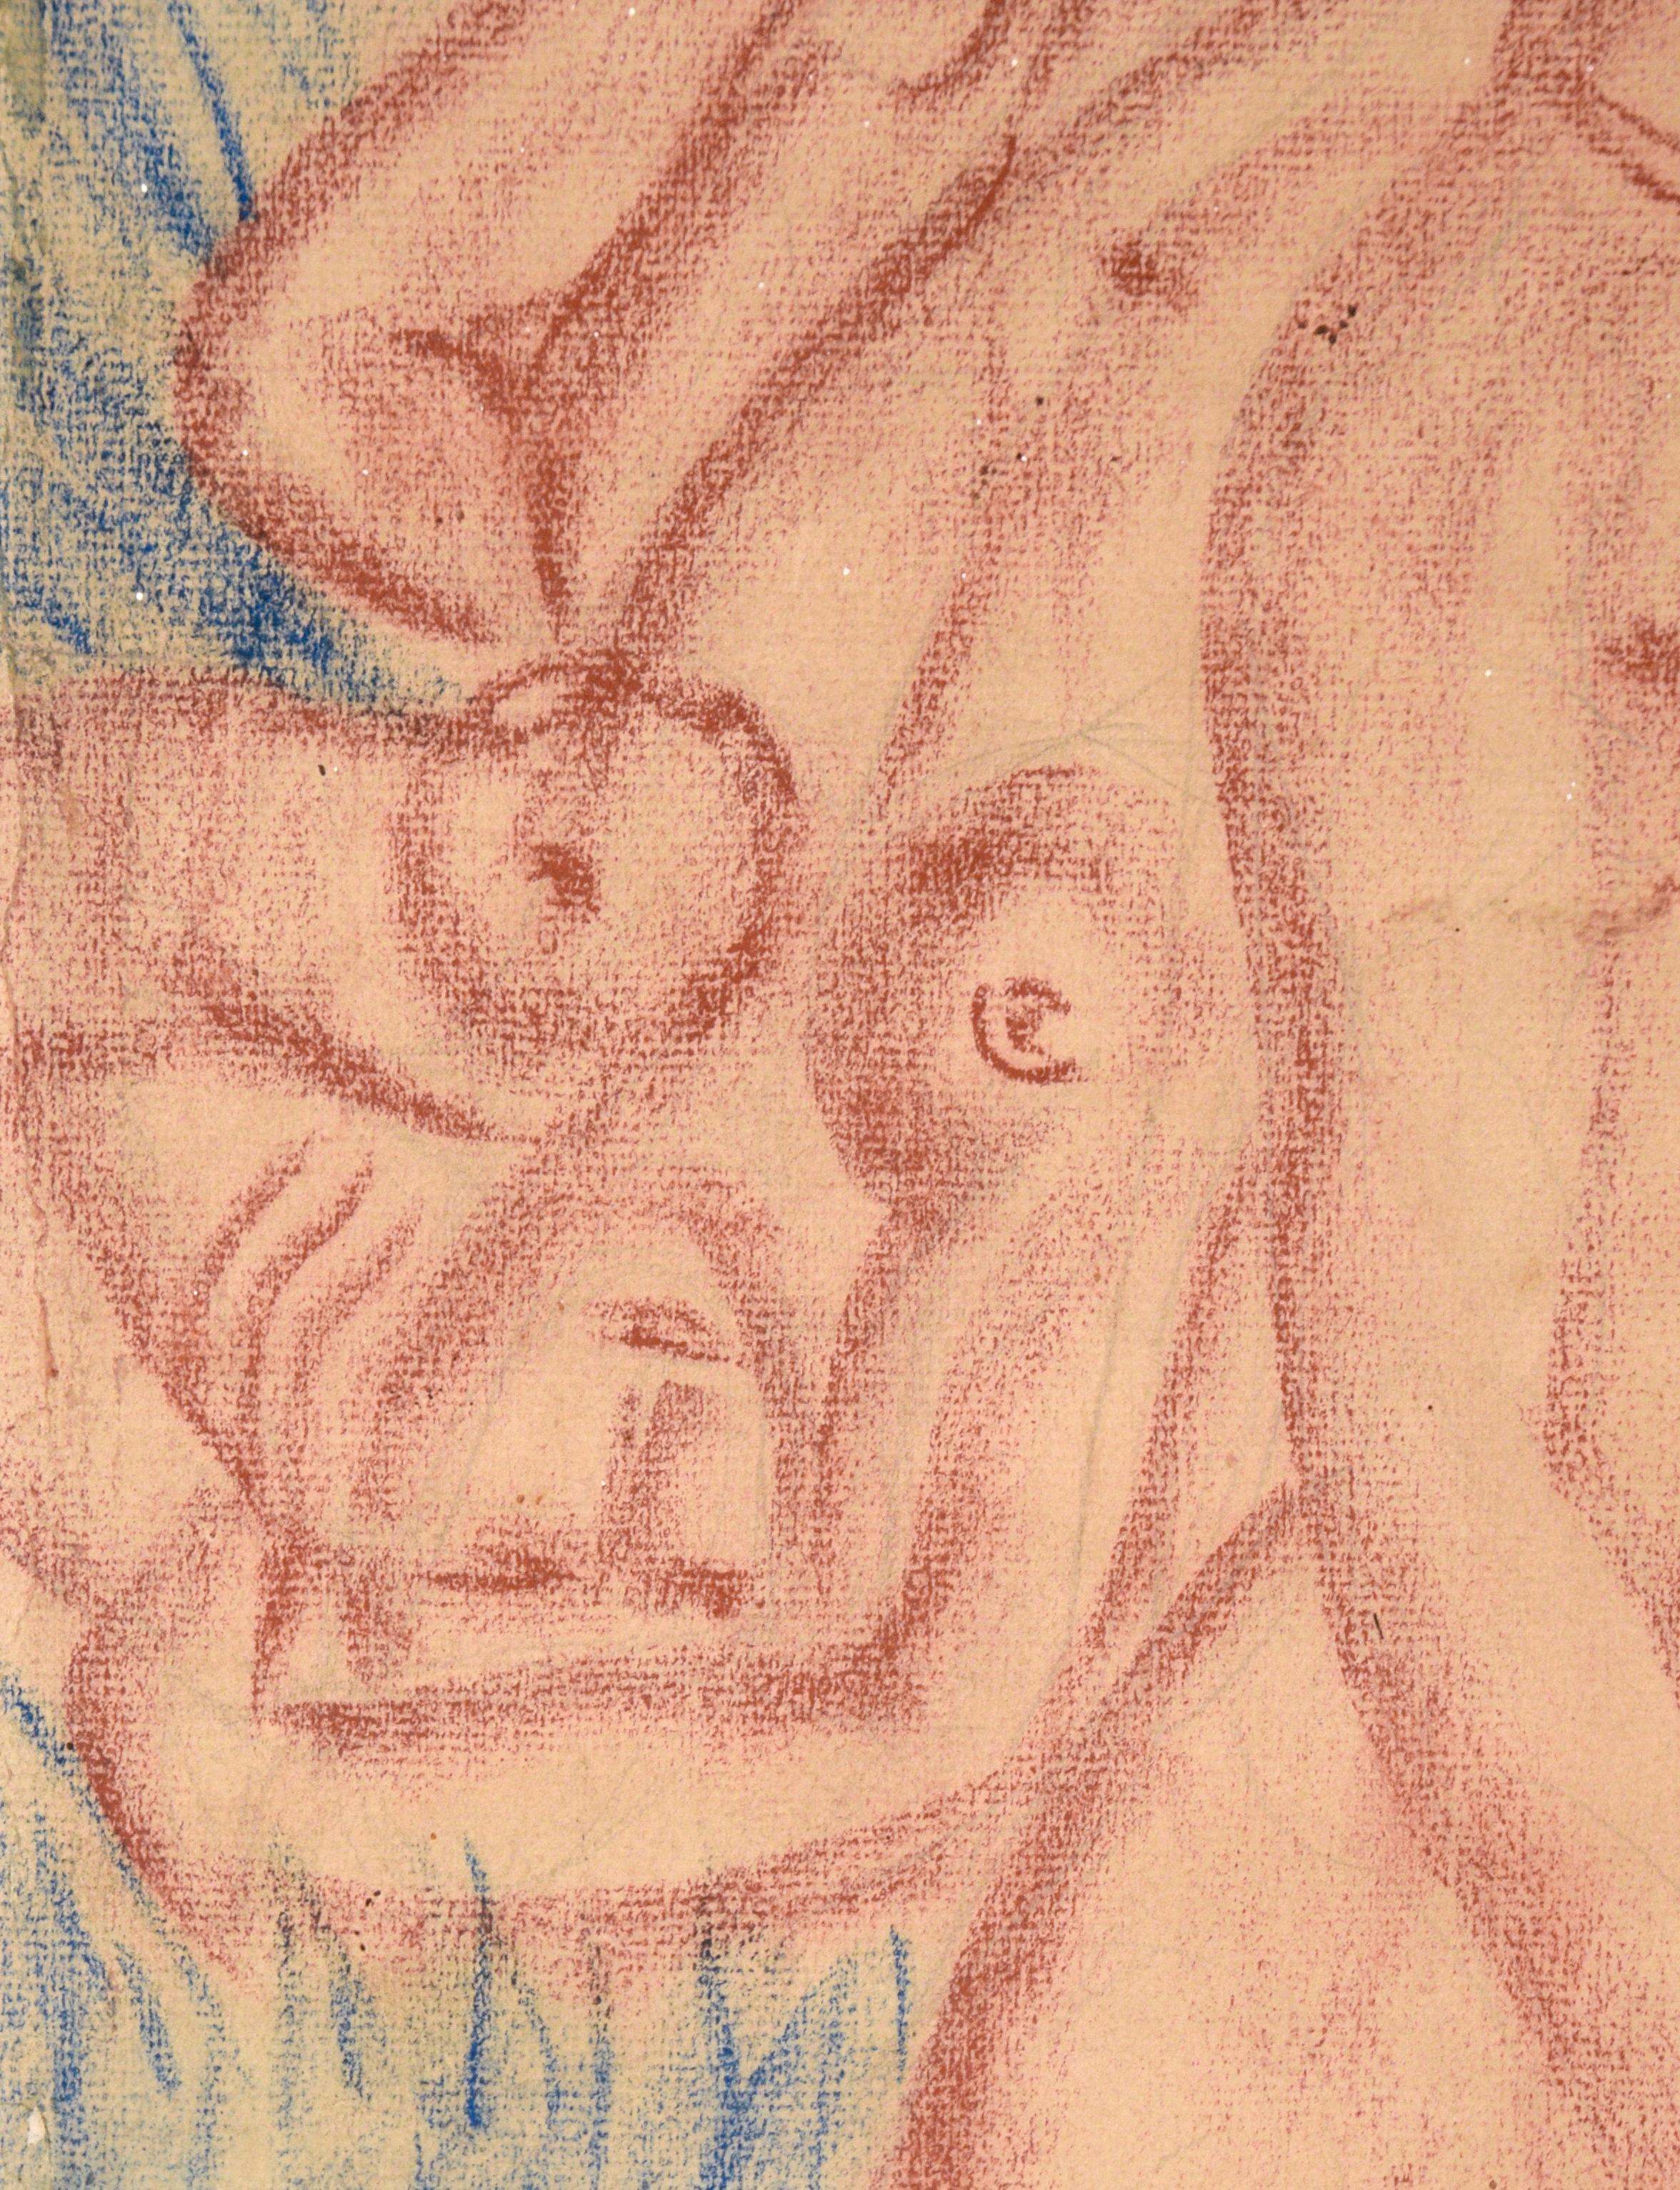 Vintage 3 Figürliche Akte in Conté-Kreide auf Papier (1946) Matté 

In einer Farbpalette aus Indigoblau und verbranntem Orange des französischen Künstlers Matté  (Französisch, 20. Jh.), dieses Kunstwerk vermittelt ein tropisches Vintage-Gefühl mit